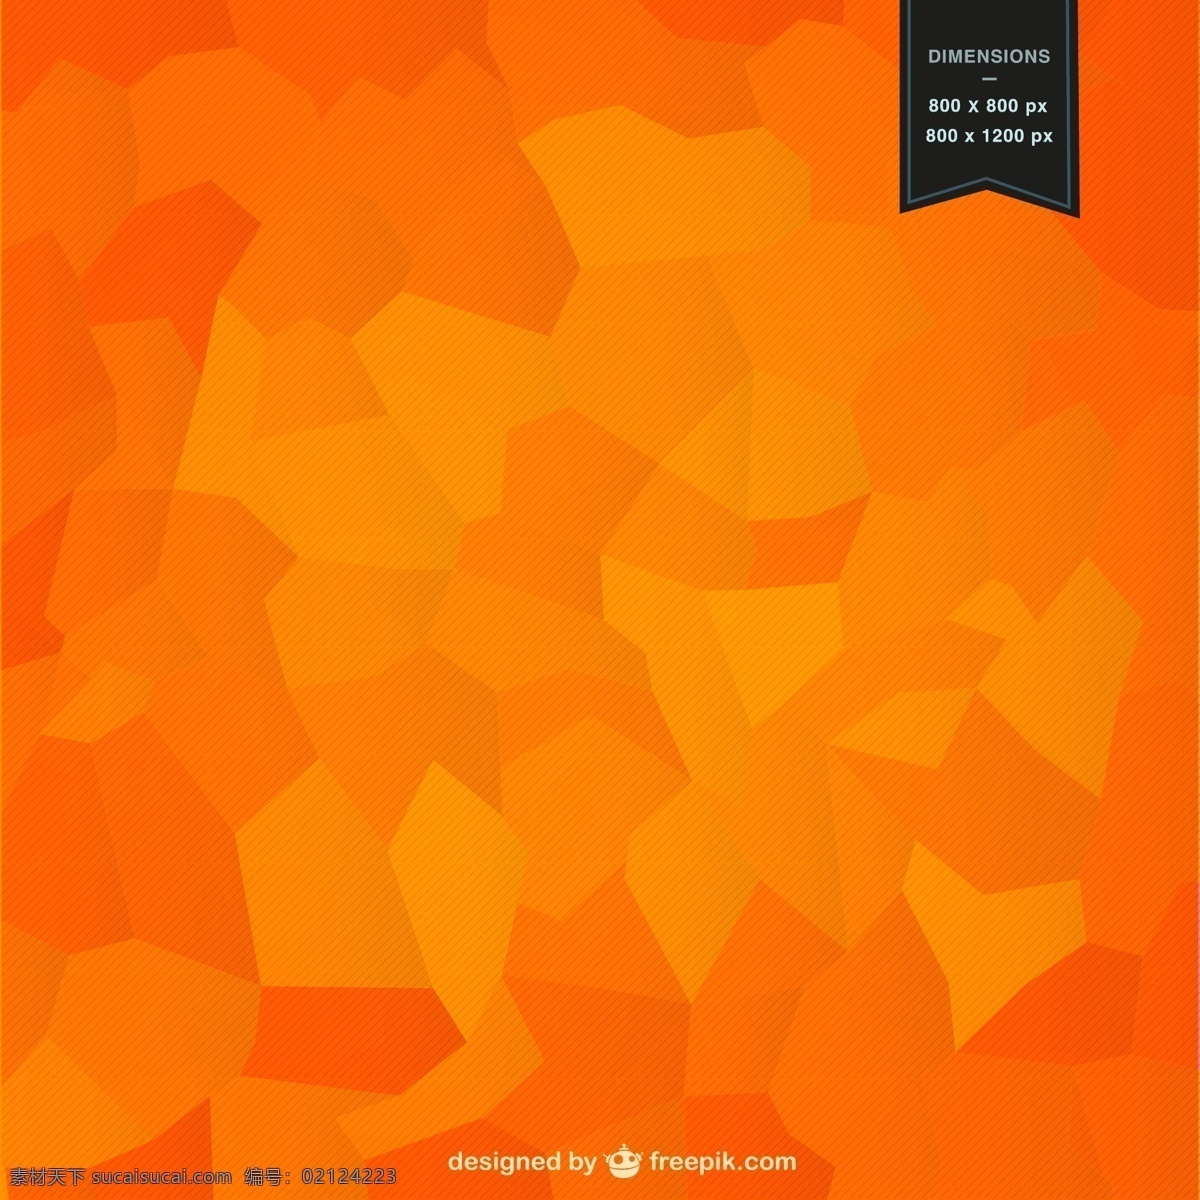 抽象 马赛克 背景 几何 模板 形状 壁纸 布局 几何背景 抽象设计 几何图形 背景设计 抽象的形状 橙色